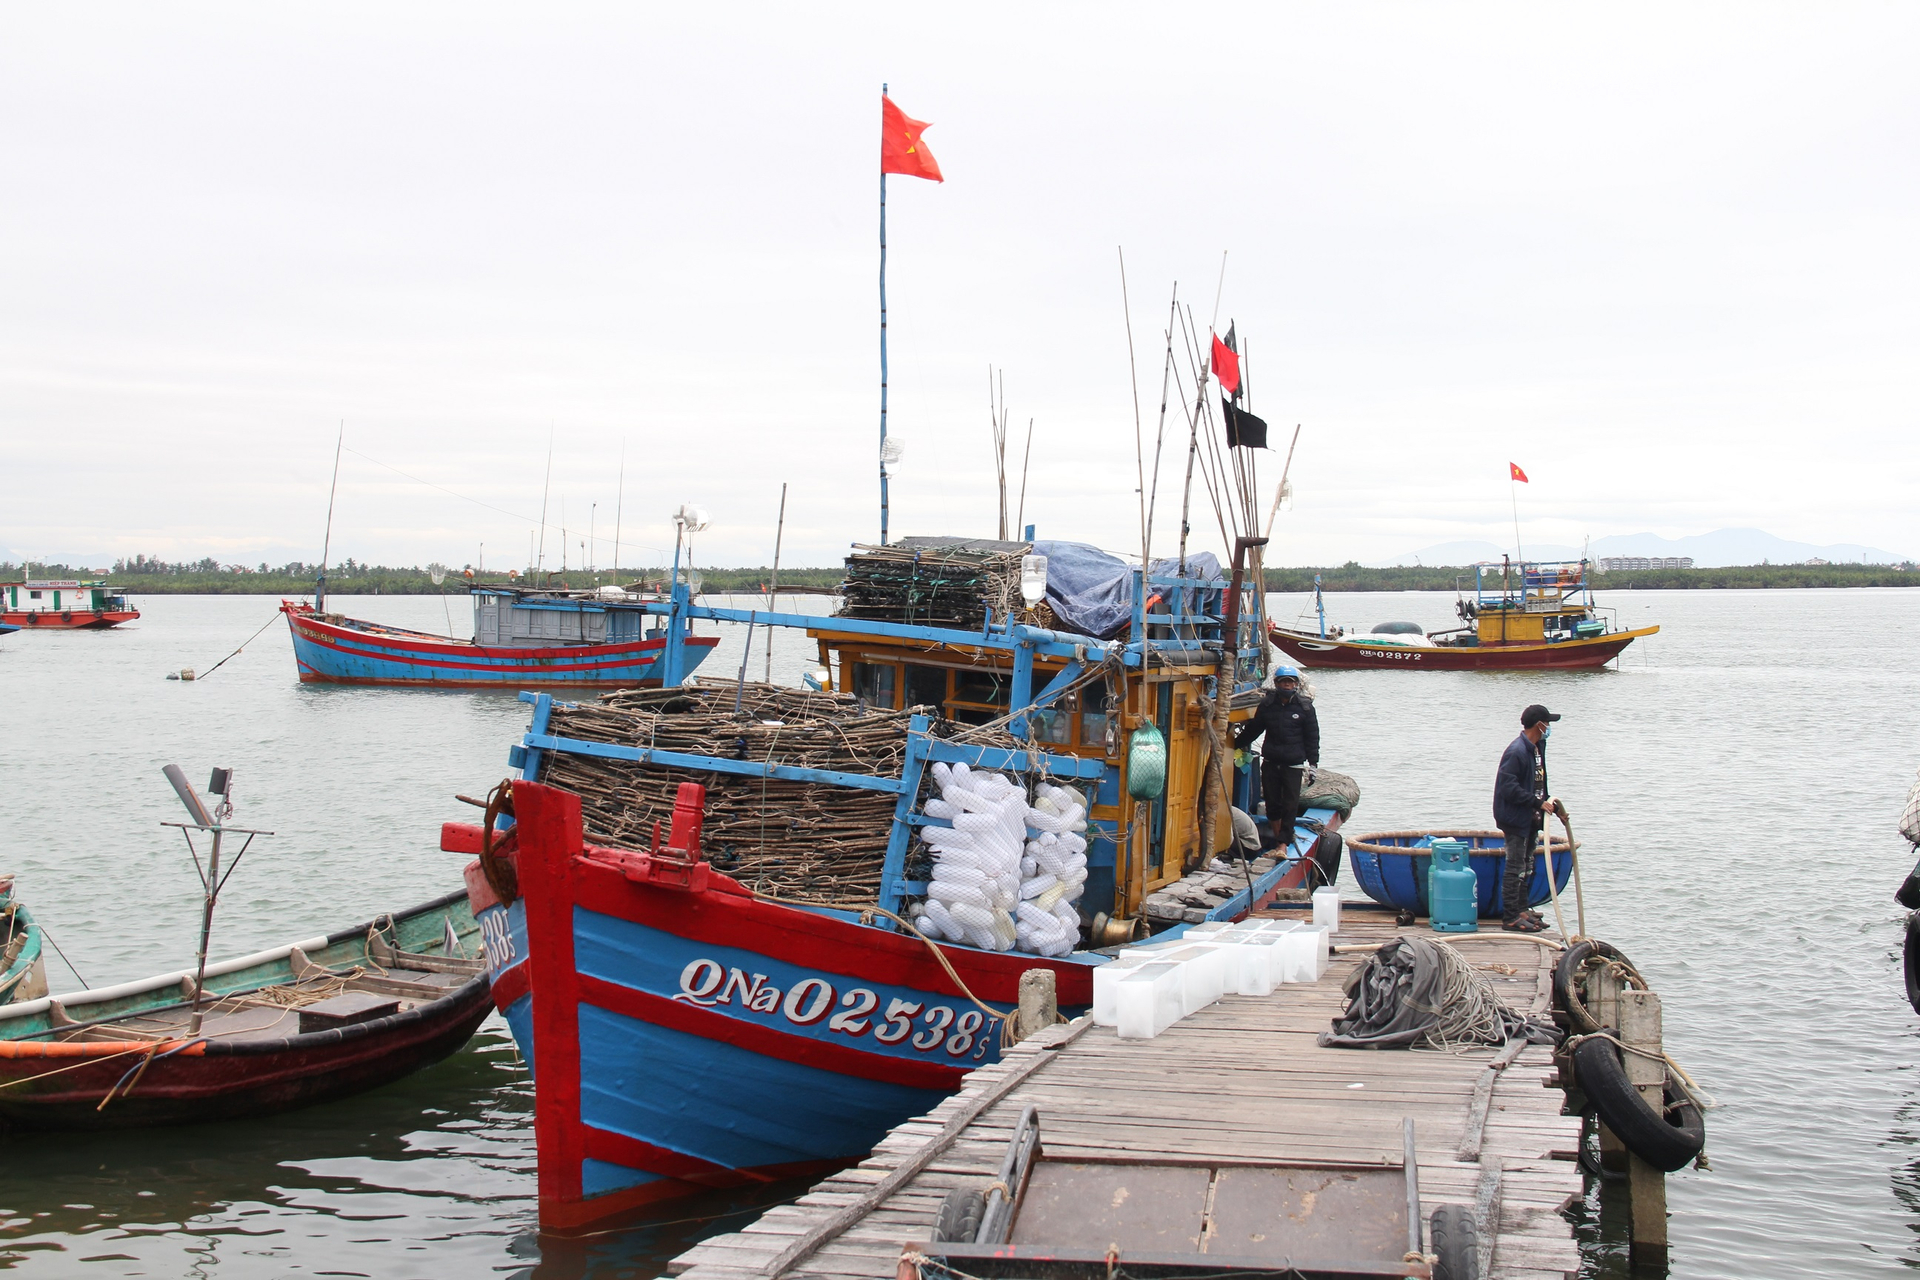 Tỉnh Quảng Nam có đội tàu khai thác thủy sản khoảng hơn 2.700 chiếc. Ảnh: L.K.